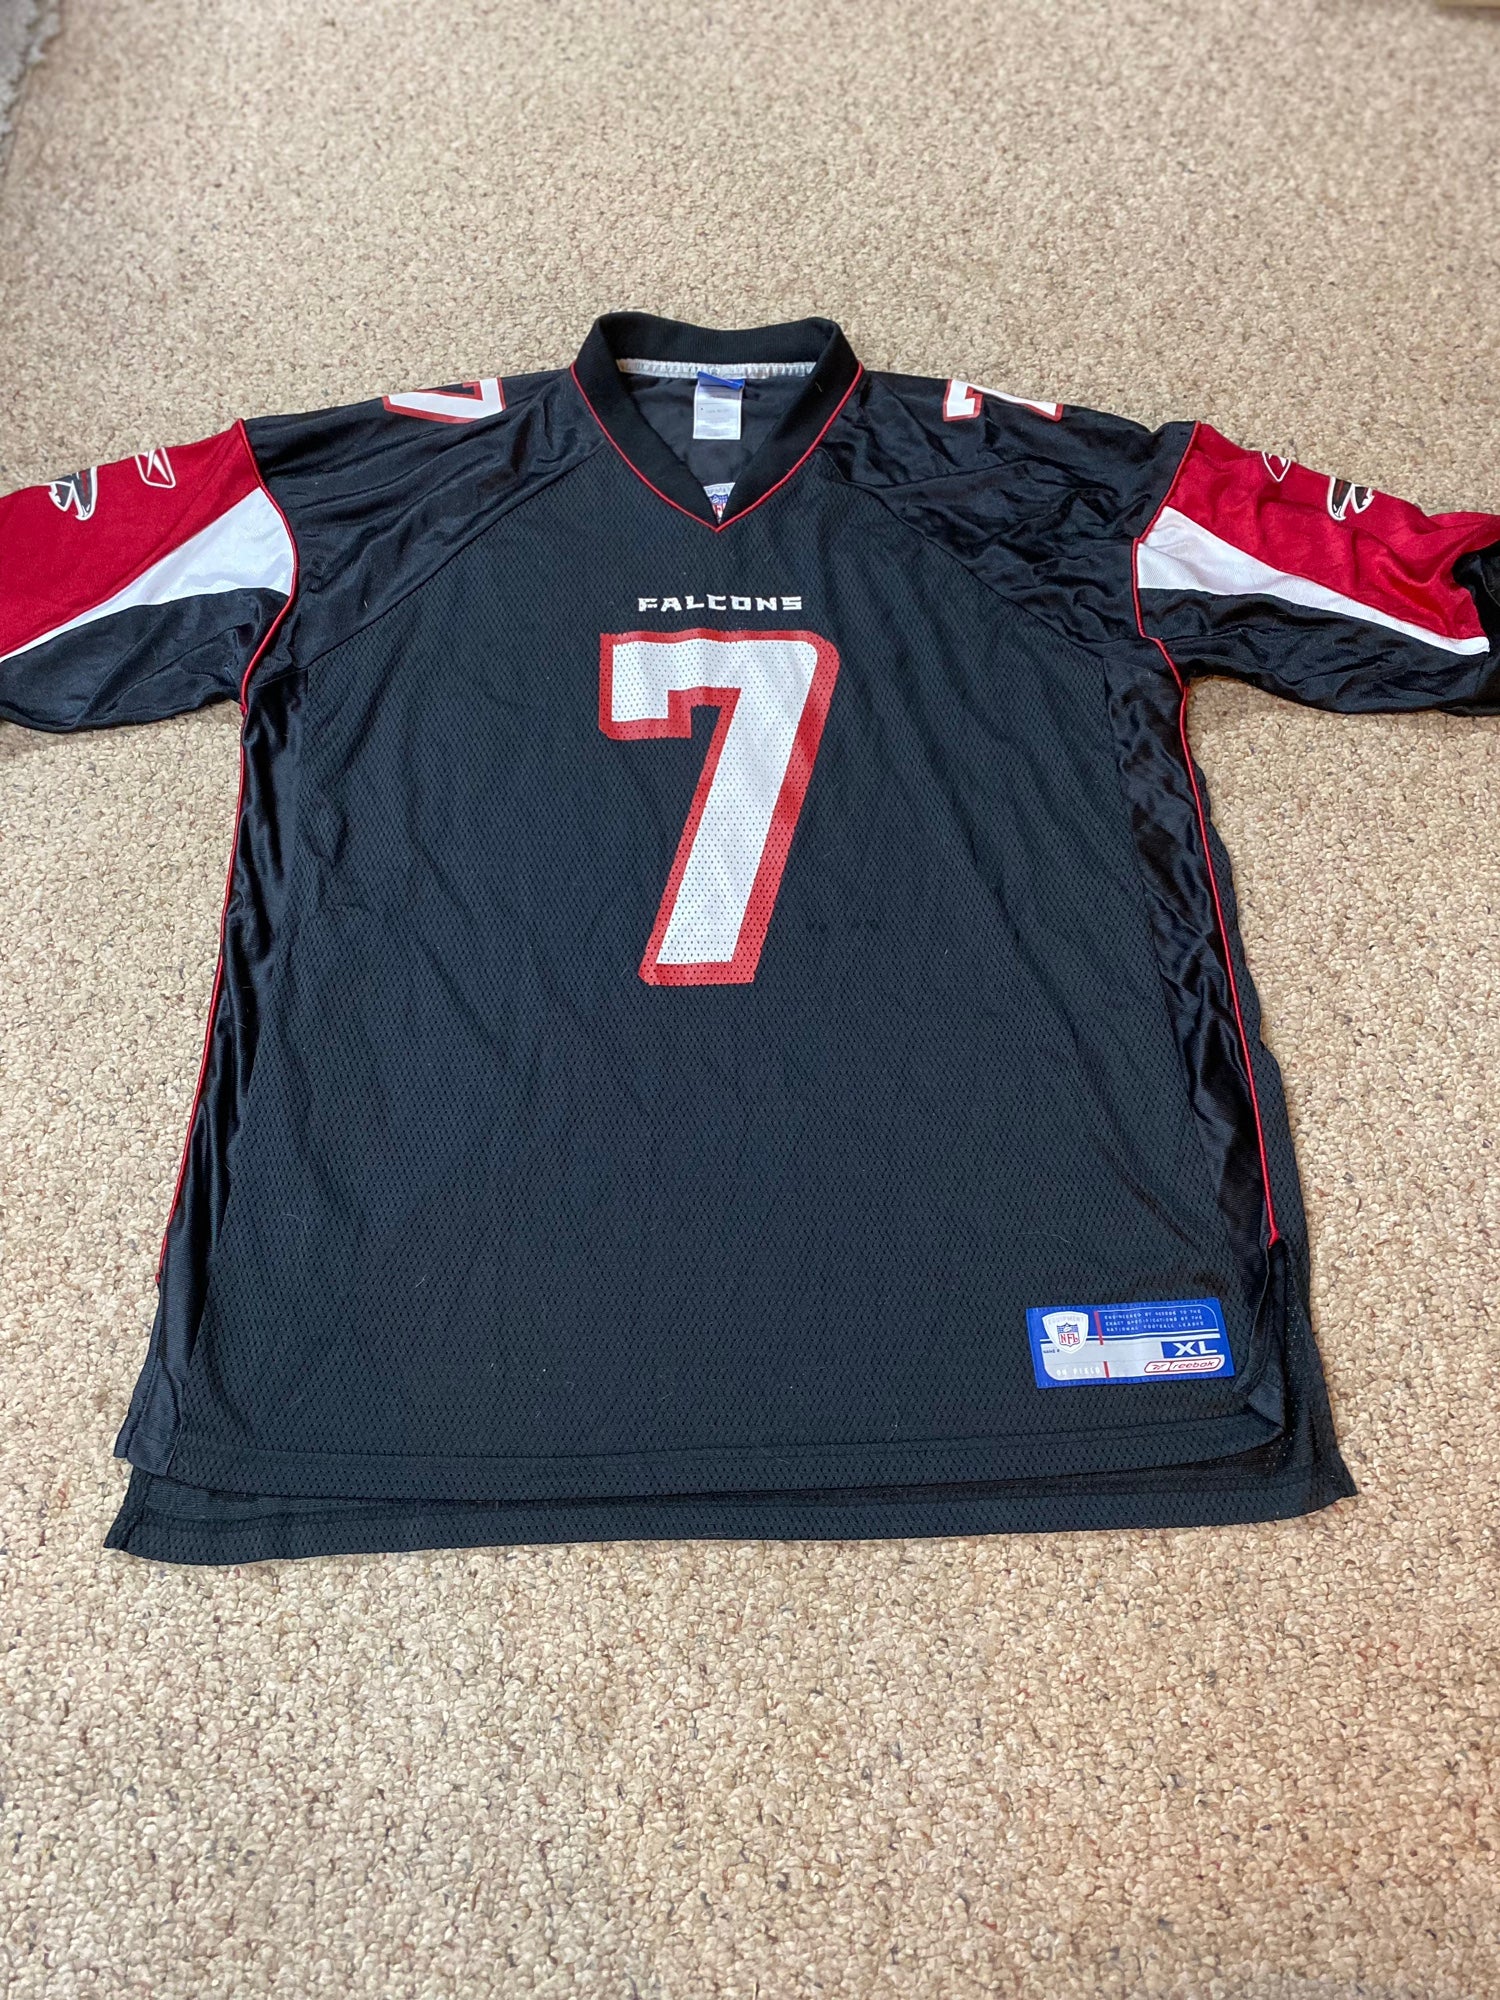 Reebok, Shirts, Atlanta Falcons Michael Vick On Field Jersey Size 56